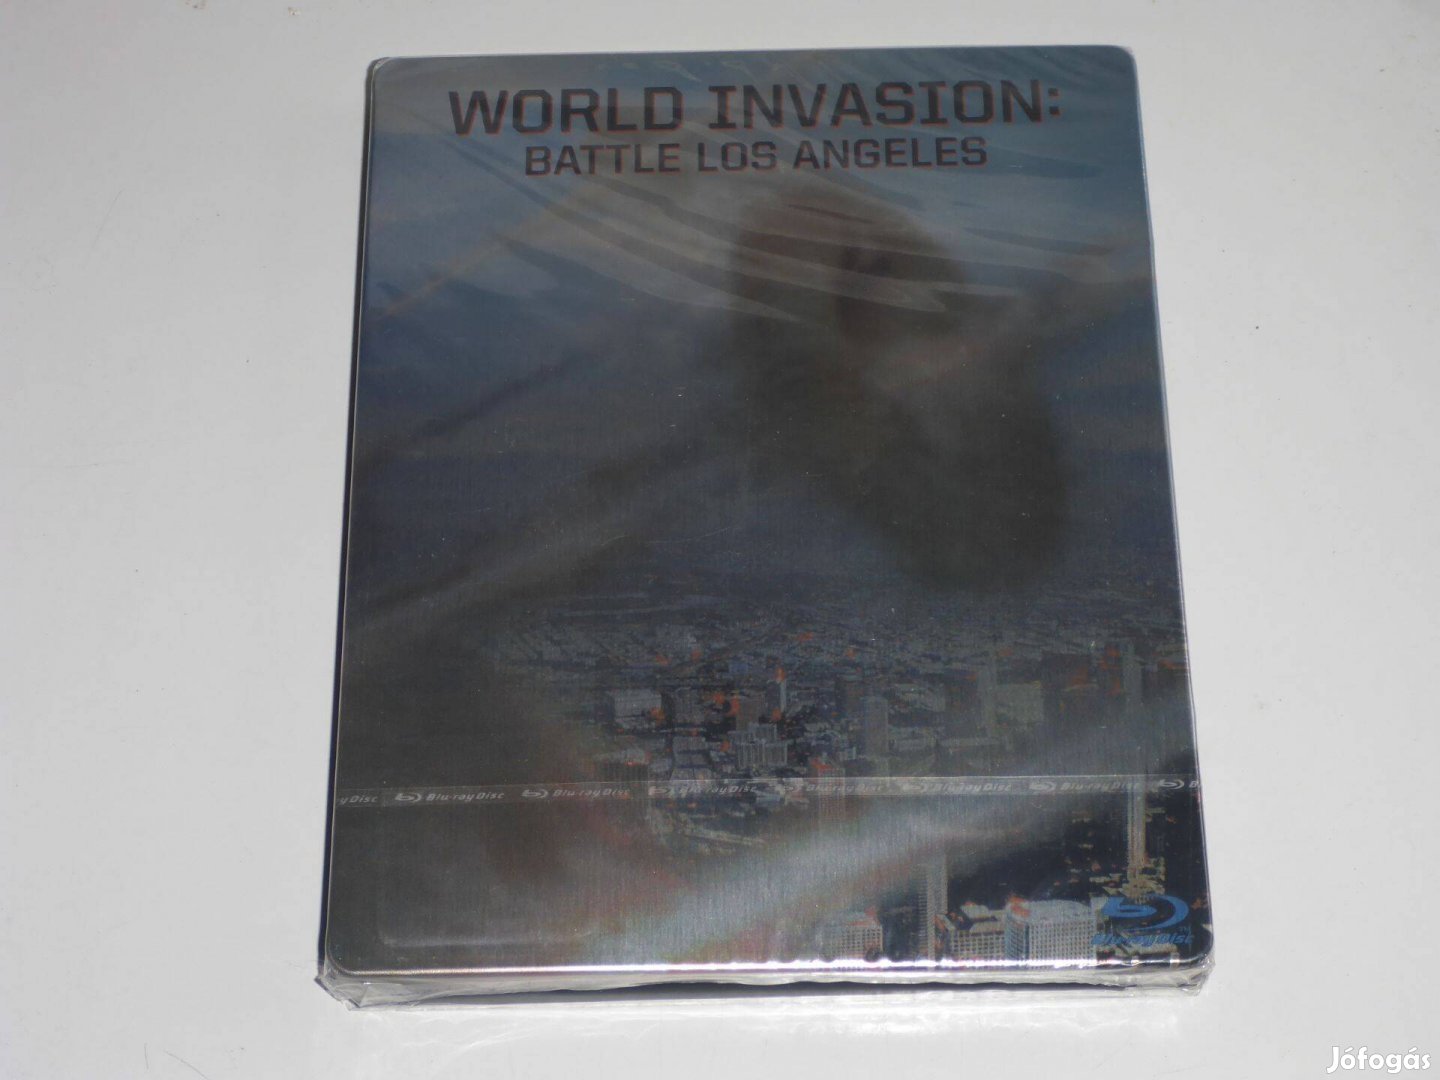 A Föld inváziója-Csata:Los Angeles Limitált fémdobozos változat (Steel